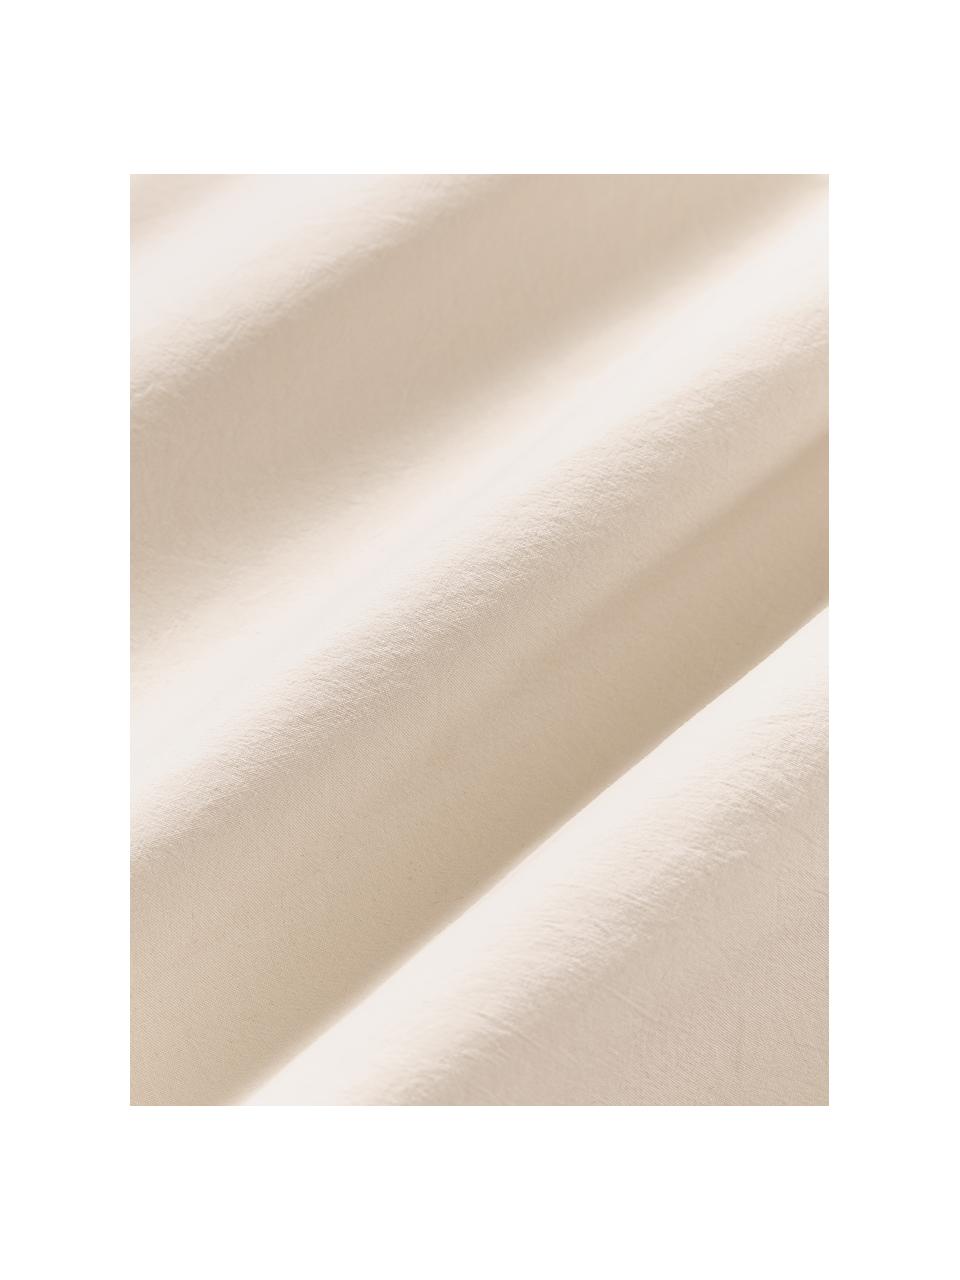 Bavlnená obliečka na vankúš Darlyn, 100 %  bavlna
Hustota vlákna 150 TC, štandard kvalita

Posteľná bielizeň z bavlny je príjemná na dotyk, dobre absorbuje vlhkosť a je vhodná pre alergikov

Látka bola podrobená špeciálnemu procesu „Softwash”, ktorý zabezpečuje nepravidelný vypraný vzhľad, je mäkká, pružná a má prirodzený krčivý vzhľad, ktorý nevyžaduje žehlenie a pôsobí útulne

Materiál použitý v tomto produkte bol testovaný na škodlivé látky a certifikovaný podľa STANDARD 100 od OEKO-TEX®, 4265CIT, CITEVE., Béžová, Š 40 x D 80 cm